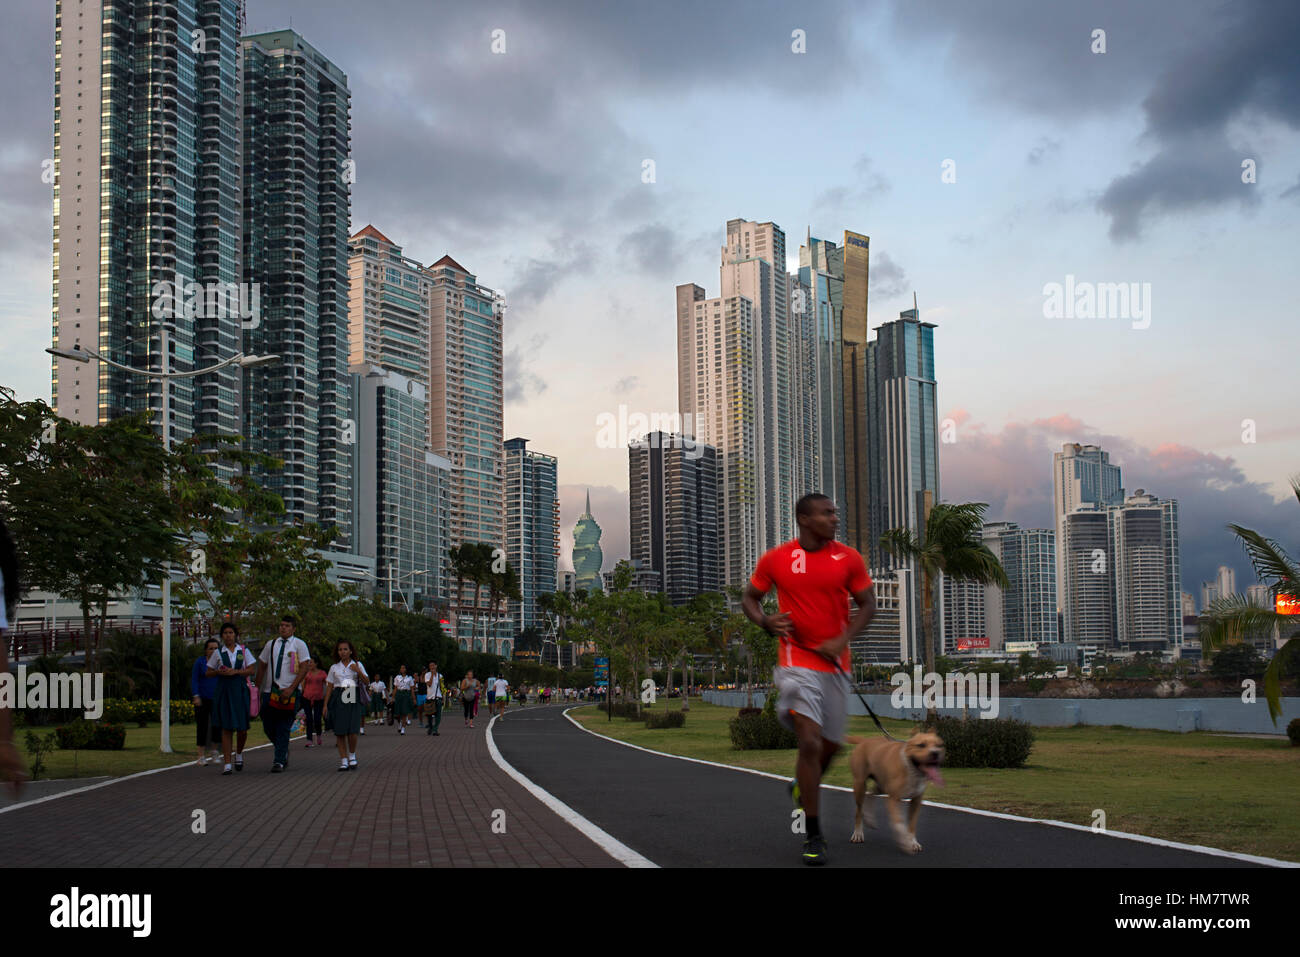 Mann mit Hund in Balboa Avenue Skyline Wolkenkratzer Straße Ufermauer neue läuft. Skyline, Panama City, Panama, Mittelamerika. Cinta Costera Pazifischen Ozean Stockfoto